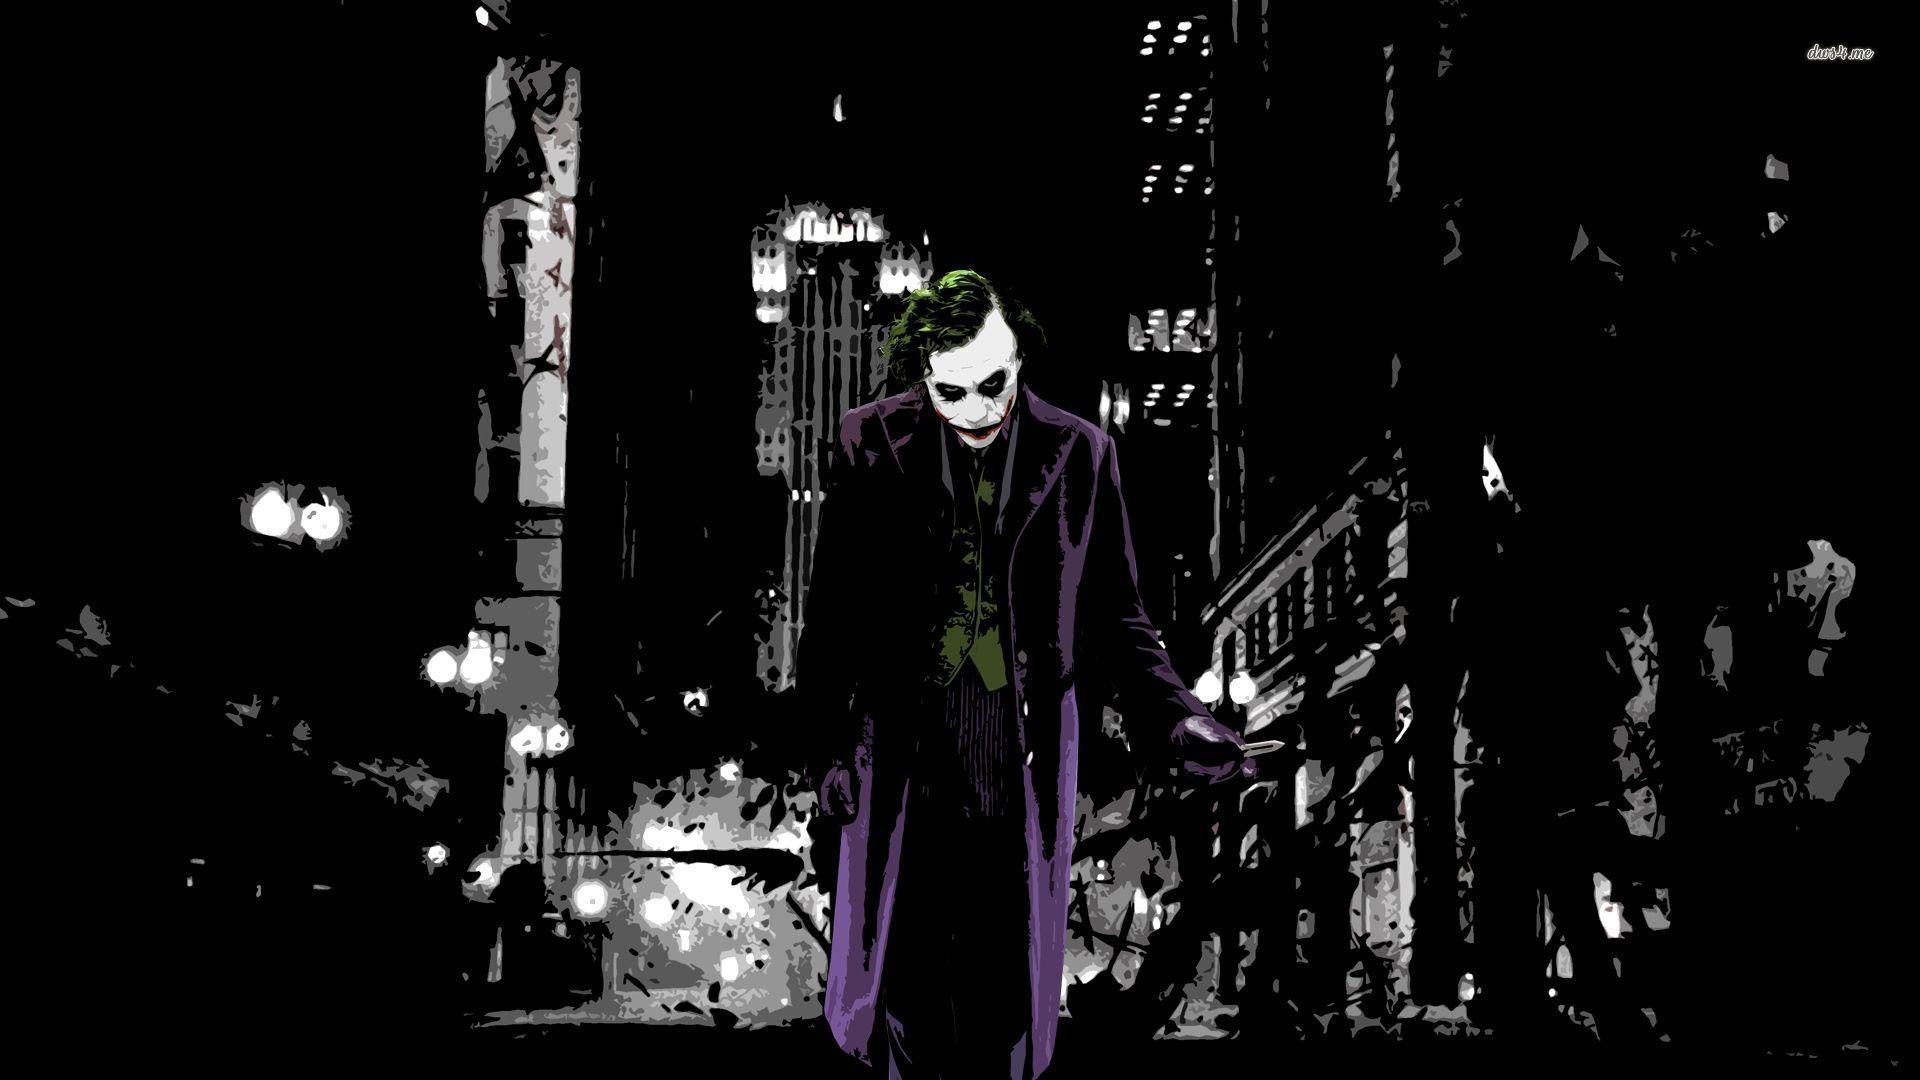 Joker Wallpapers Dark Knight - Wallpaper Cave